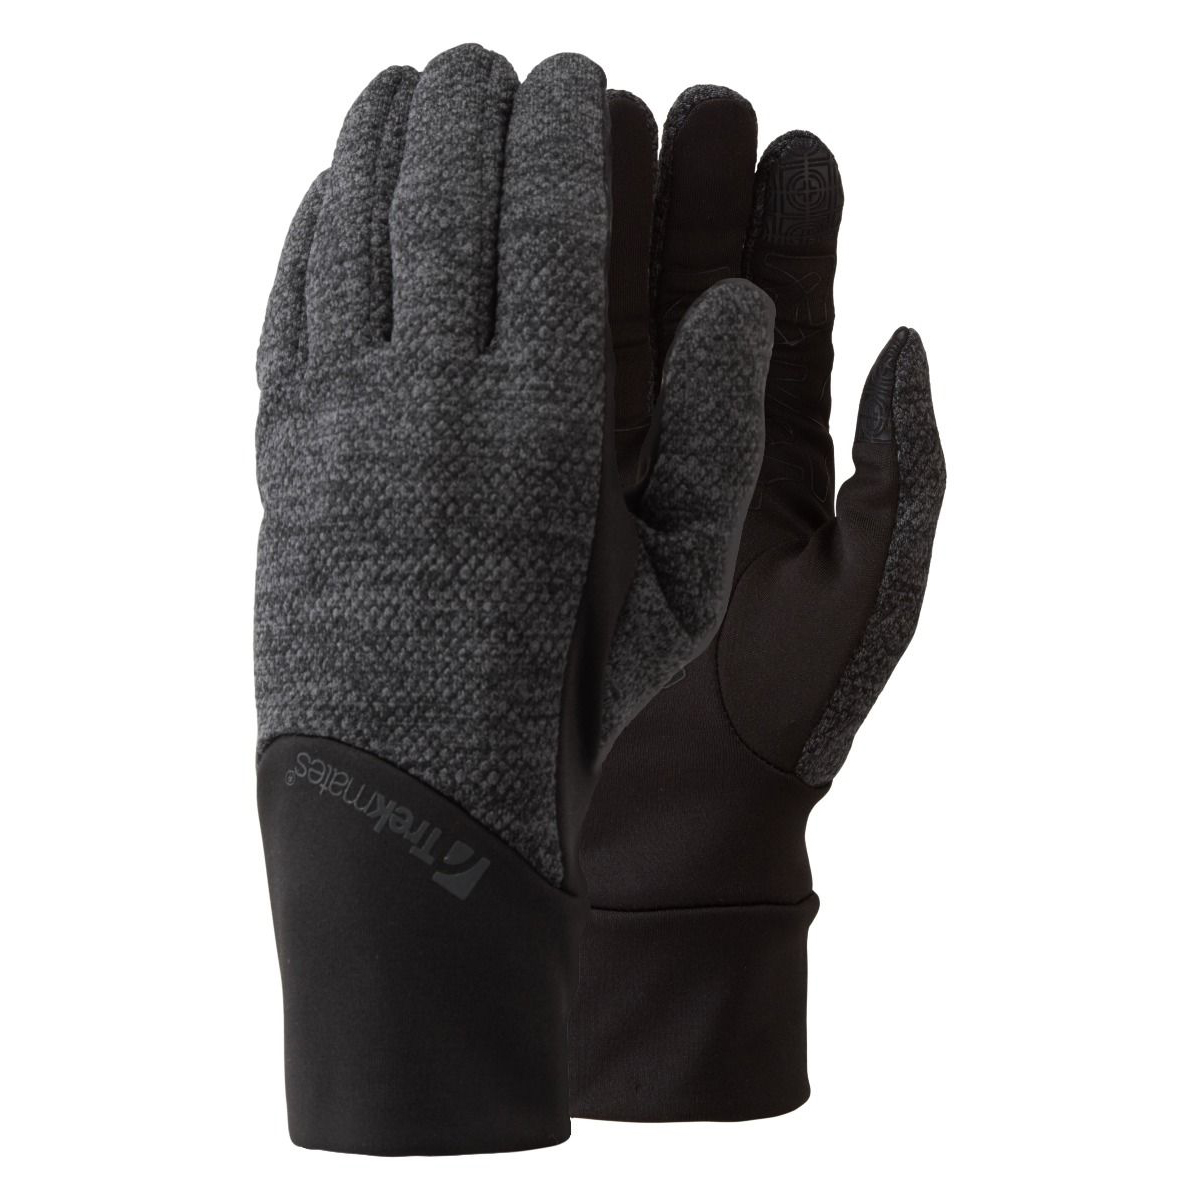 Перчатки Trekmates Harland Glove TM 004141 Dk Grey Marl, размер XL, серые